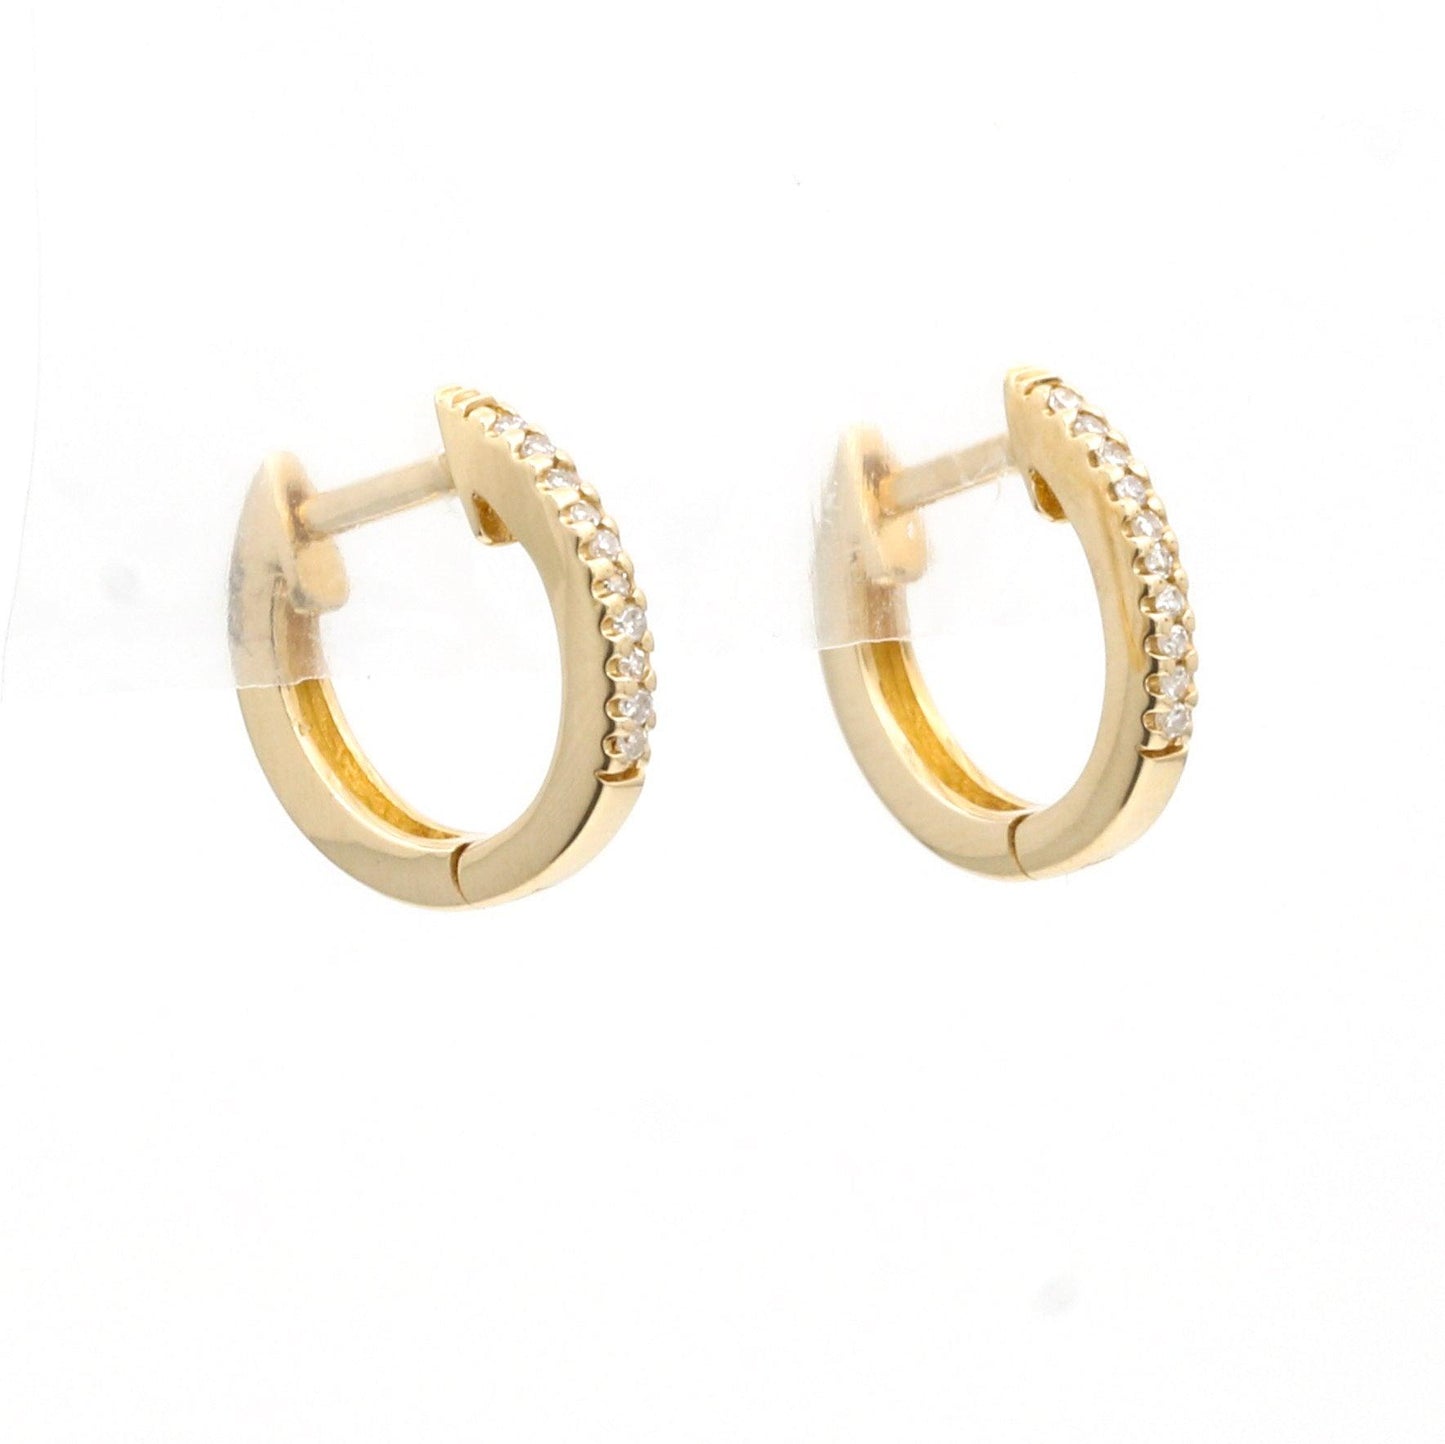 Women's Minimalist Small Diamond Hoop Earrings in 14k Yellow Gold - 31 Jewels Inc.